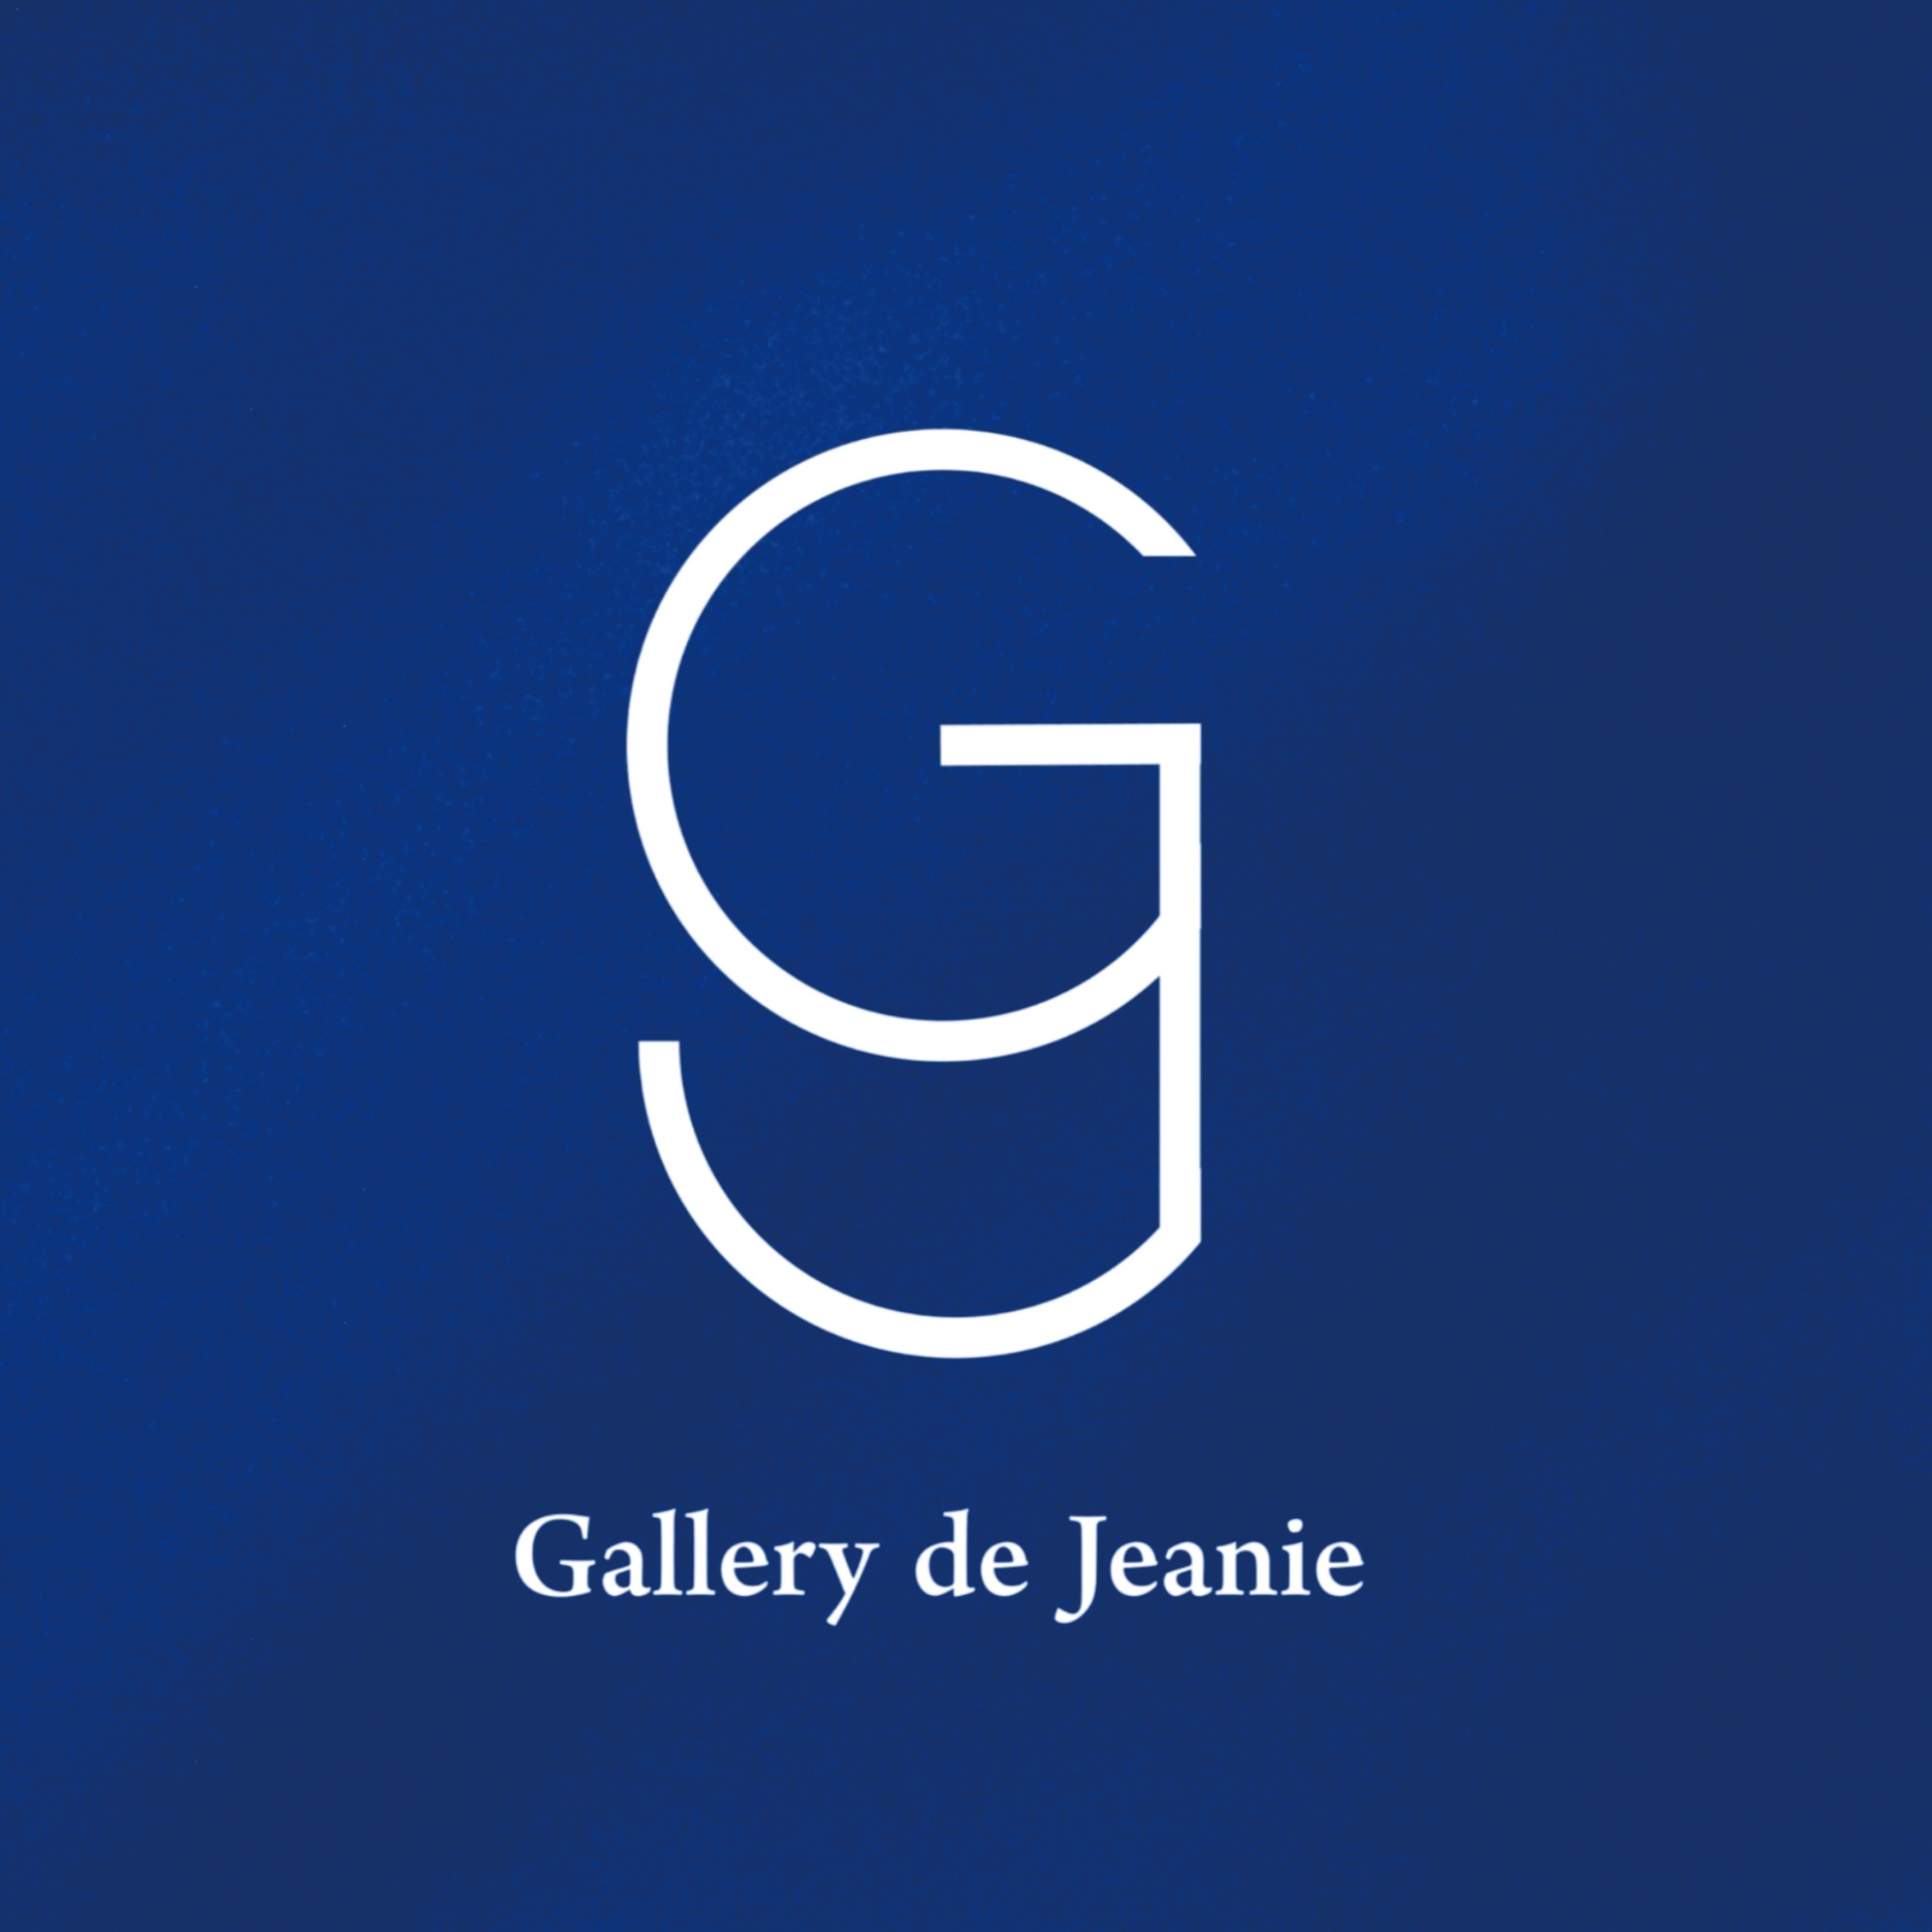 Gallery de Jeanie